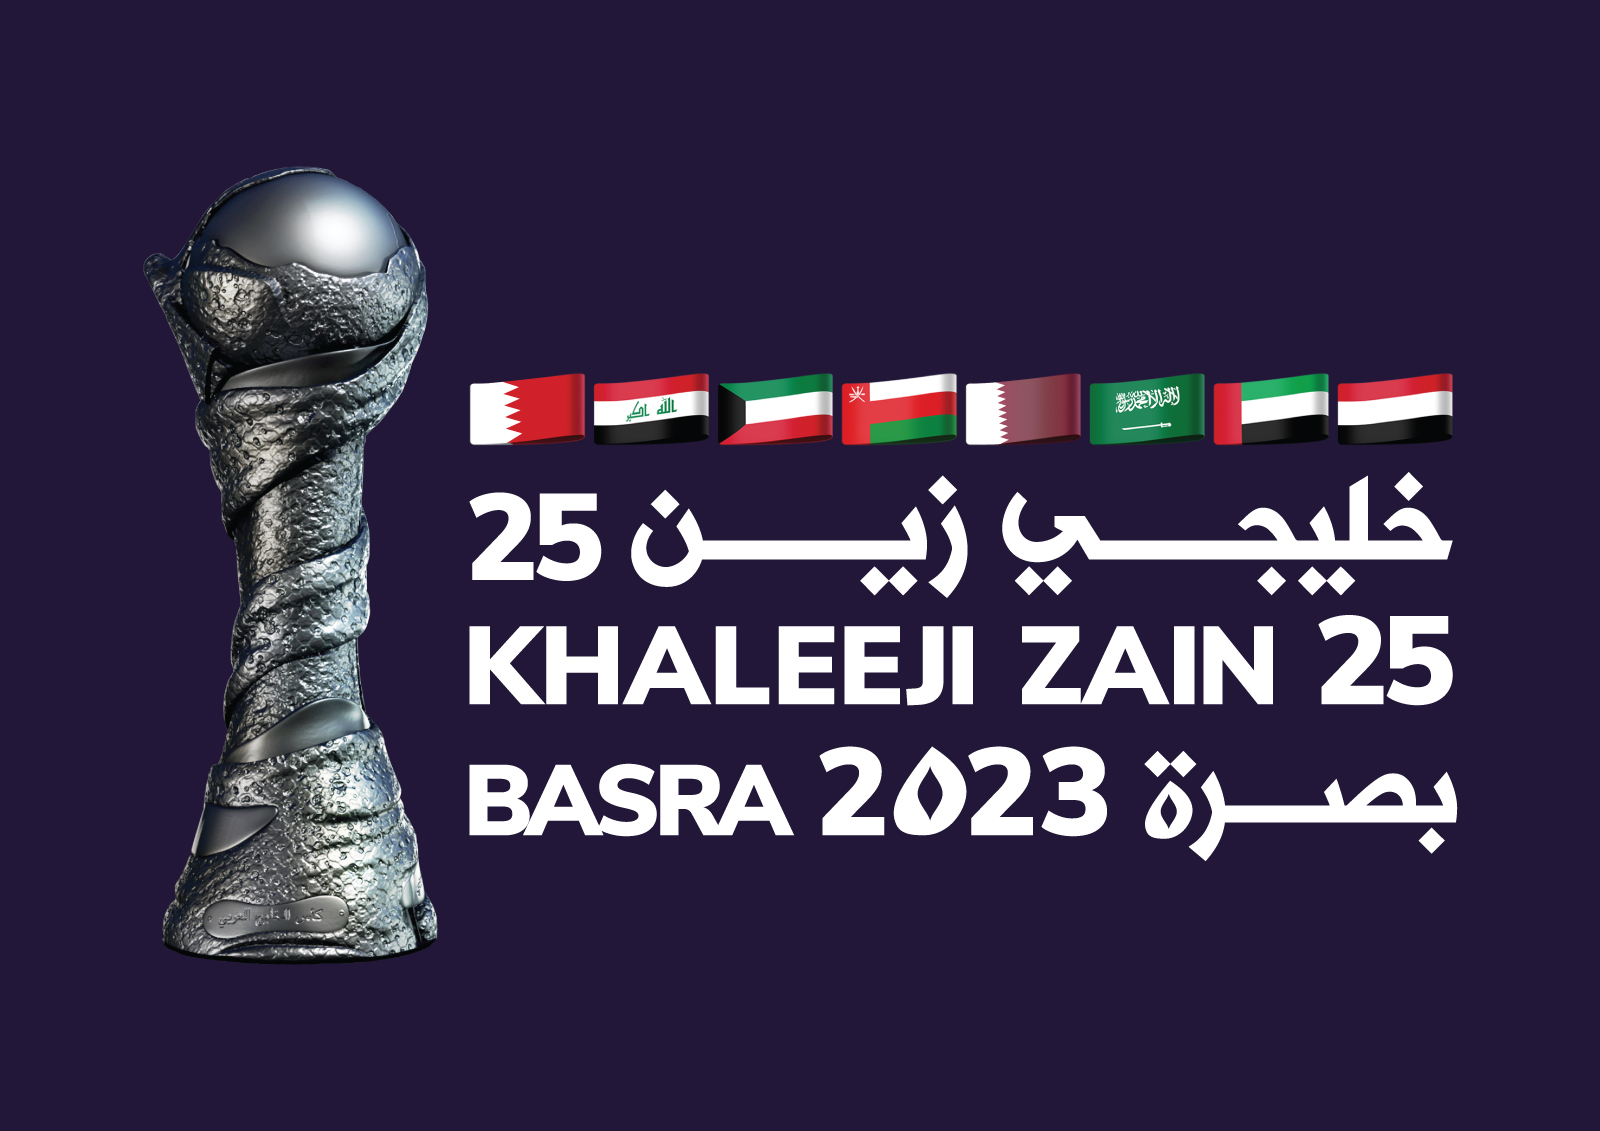 Khaleeji-Zain25 logo.jpg